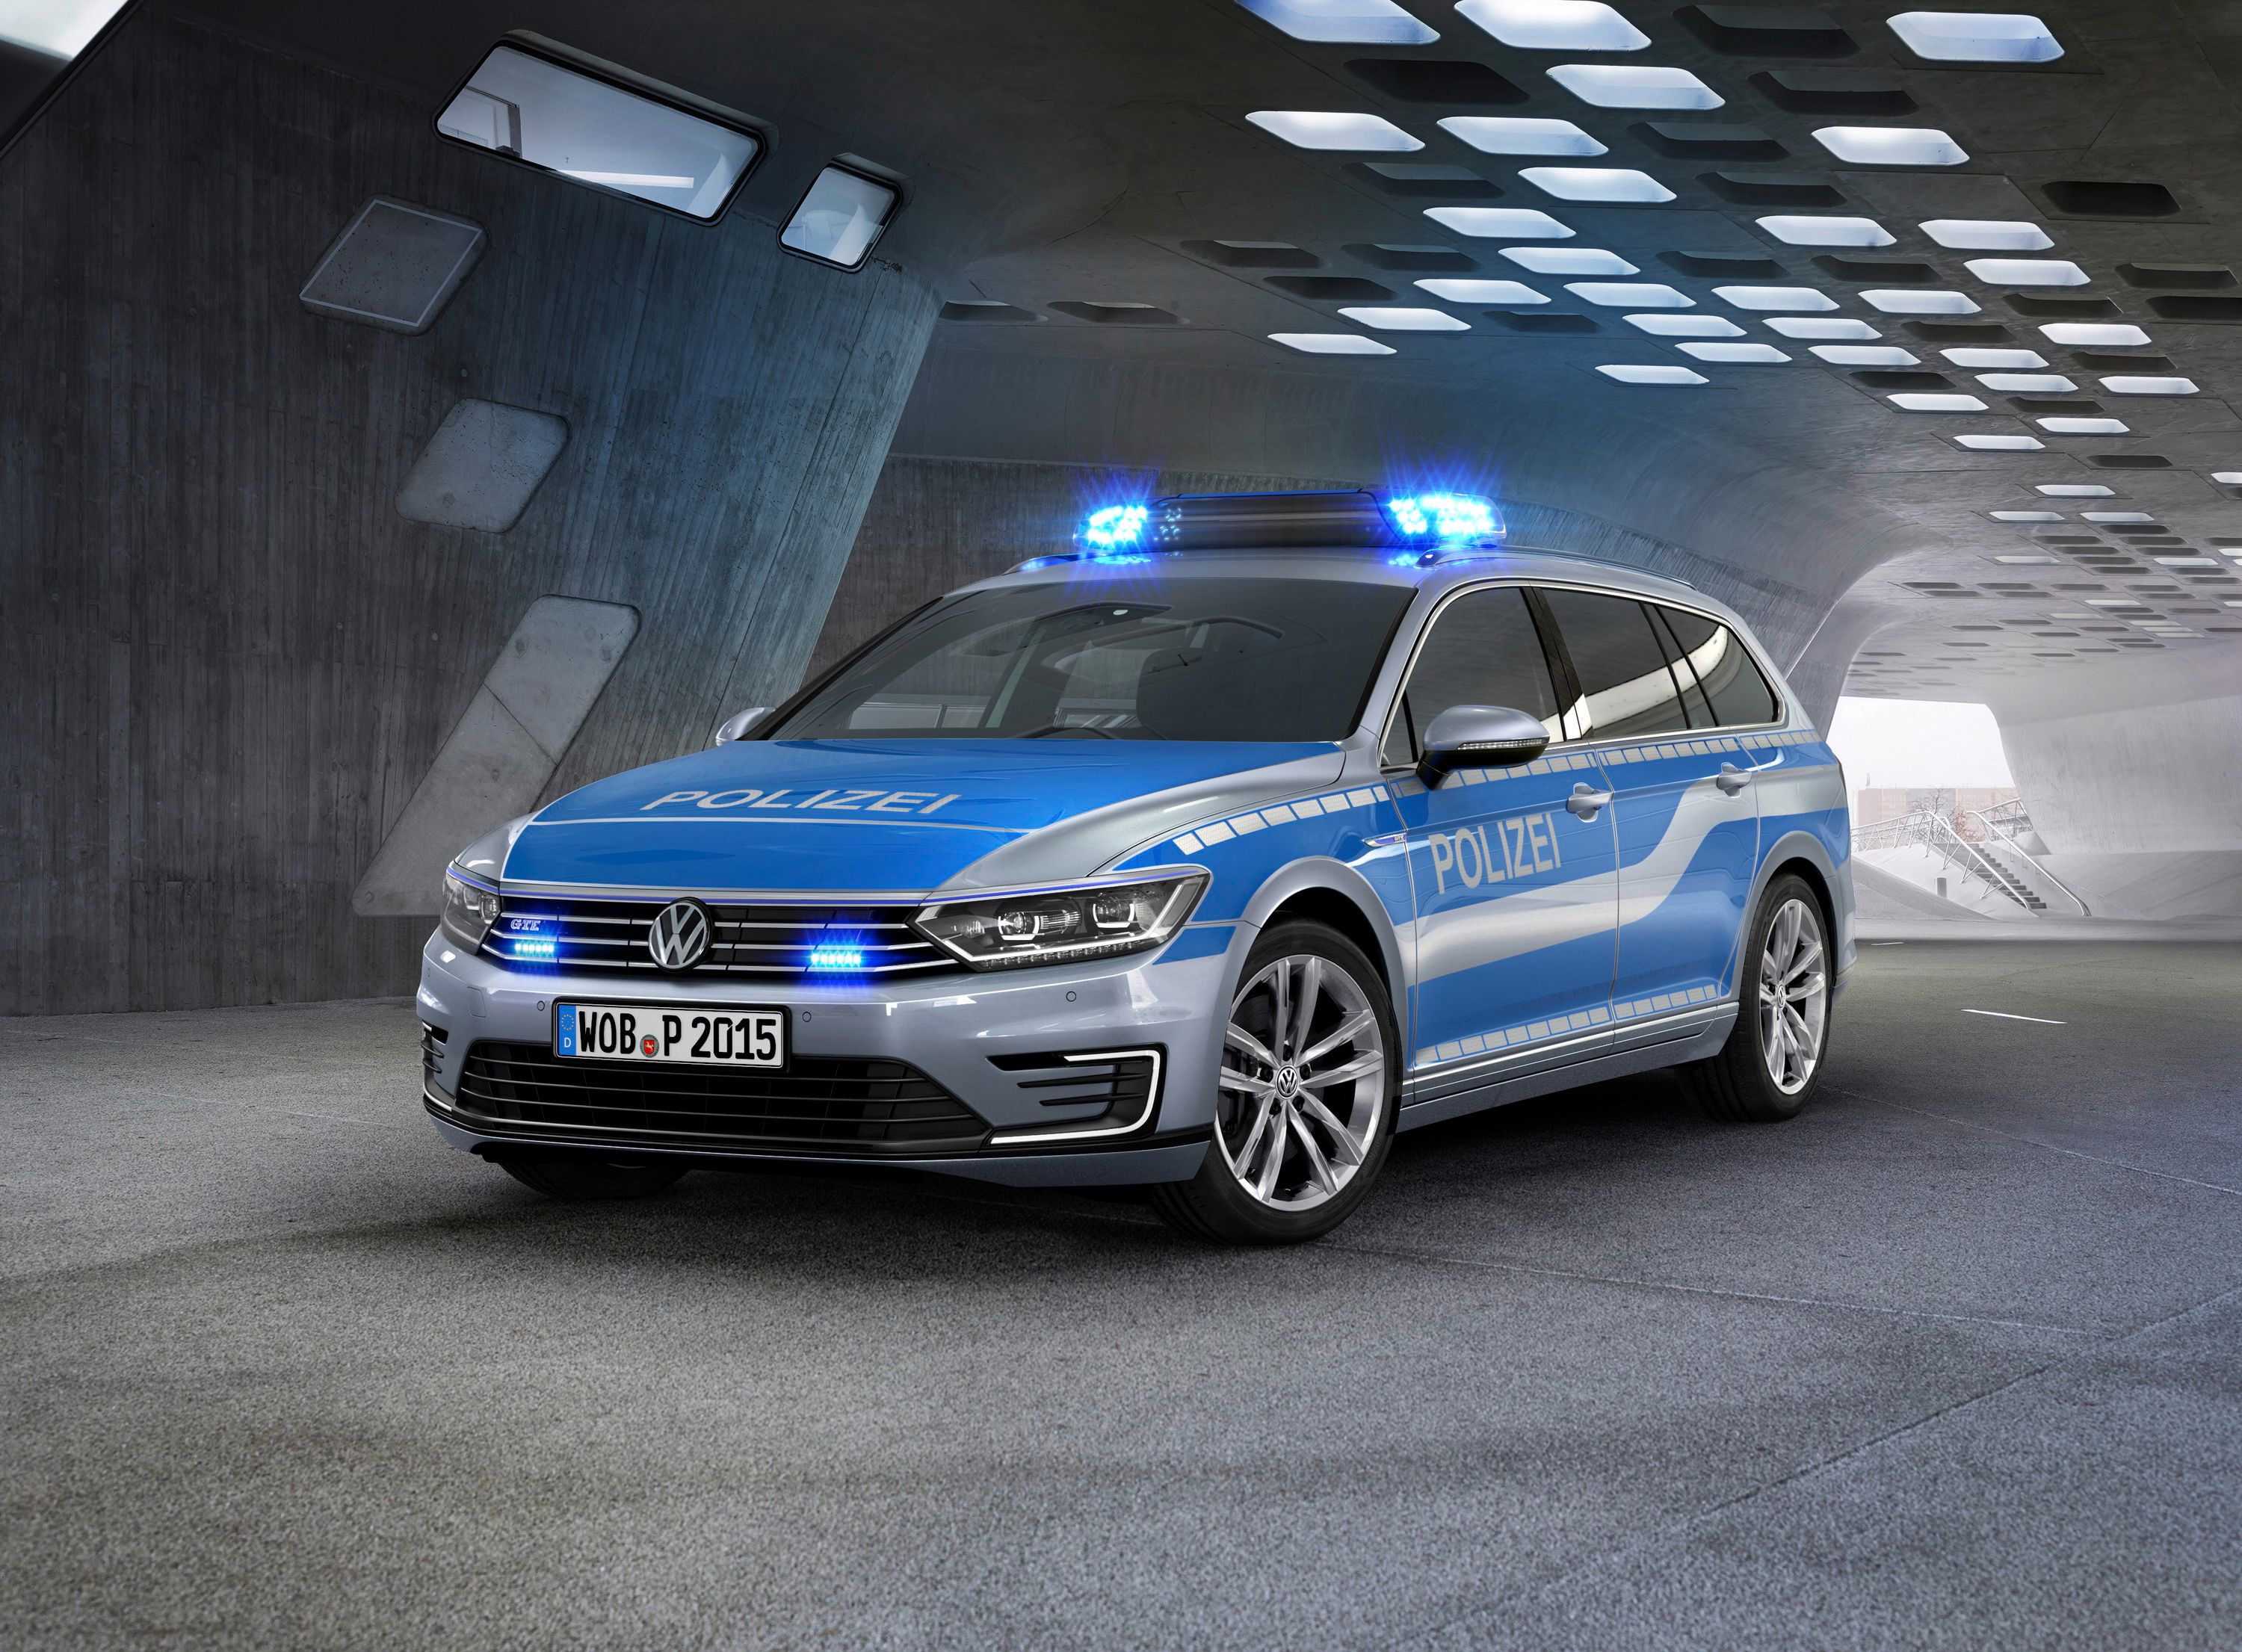 2015 Volkswagen Passat GTE Police Car